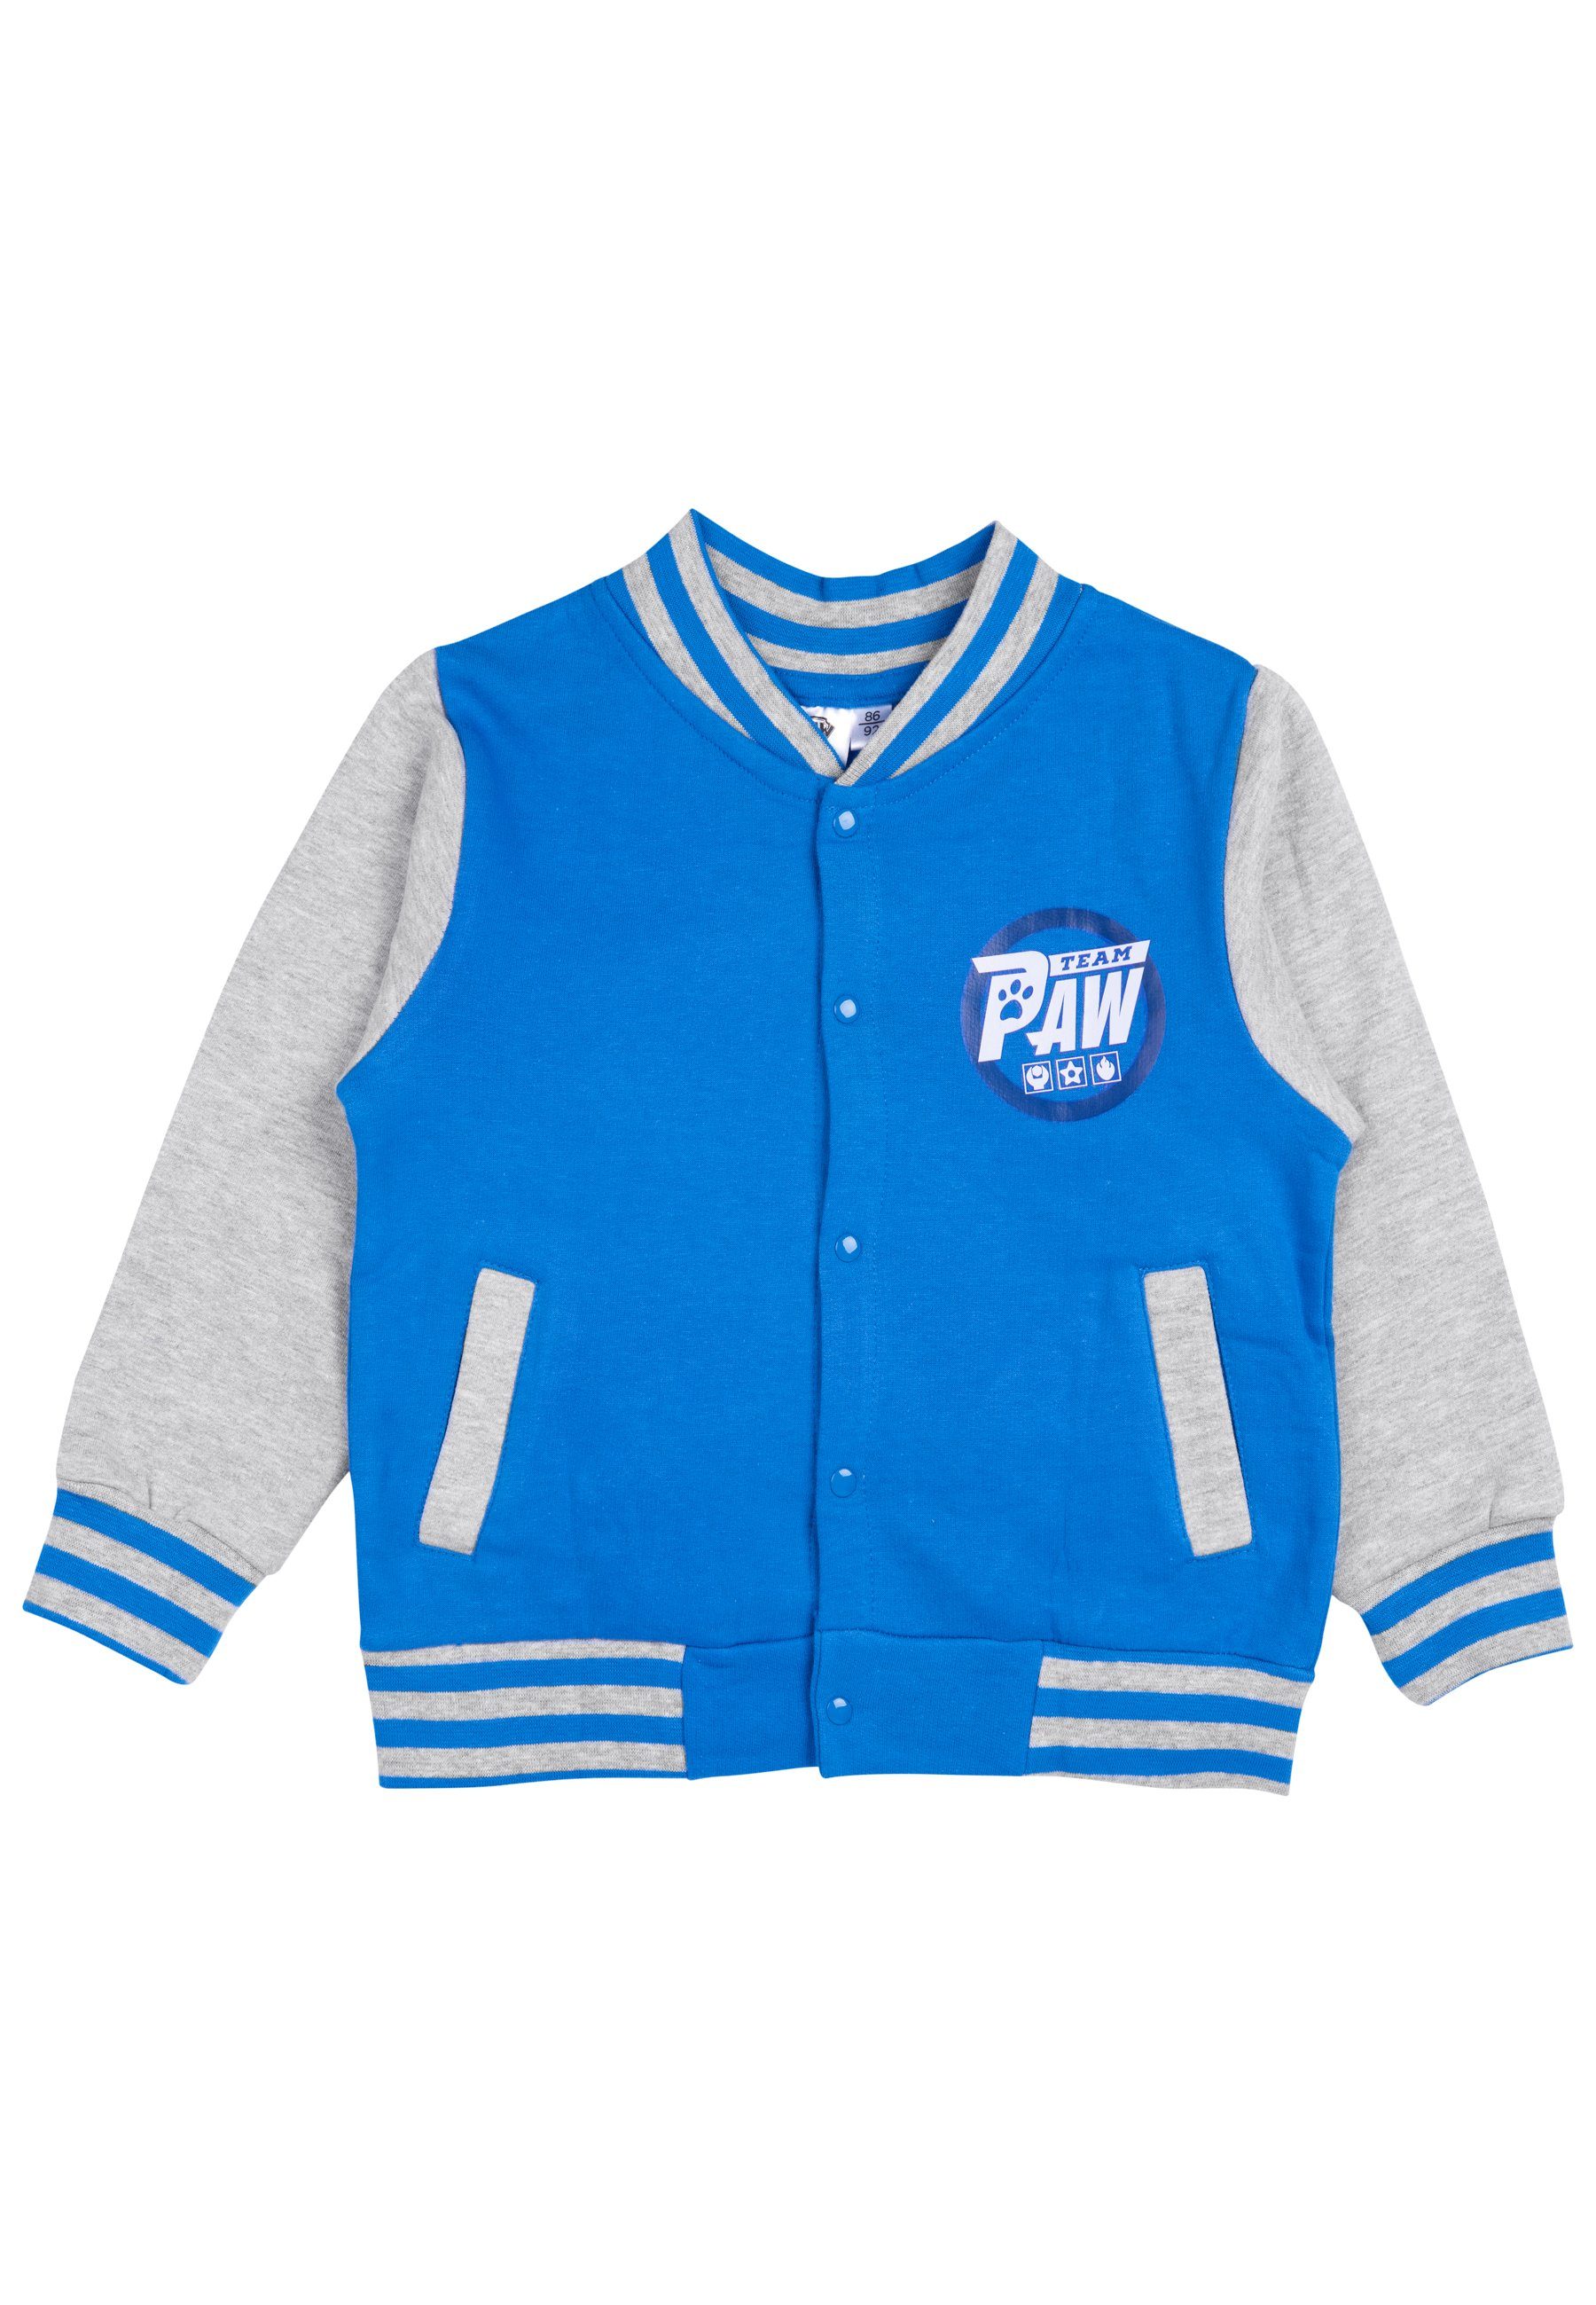 Baseball - Labels® Patrol für Collegejacke Retro Blau/Grau United Jungen Paw Sweatjacke Jacke